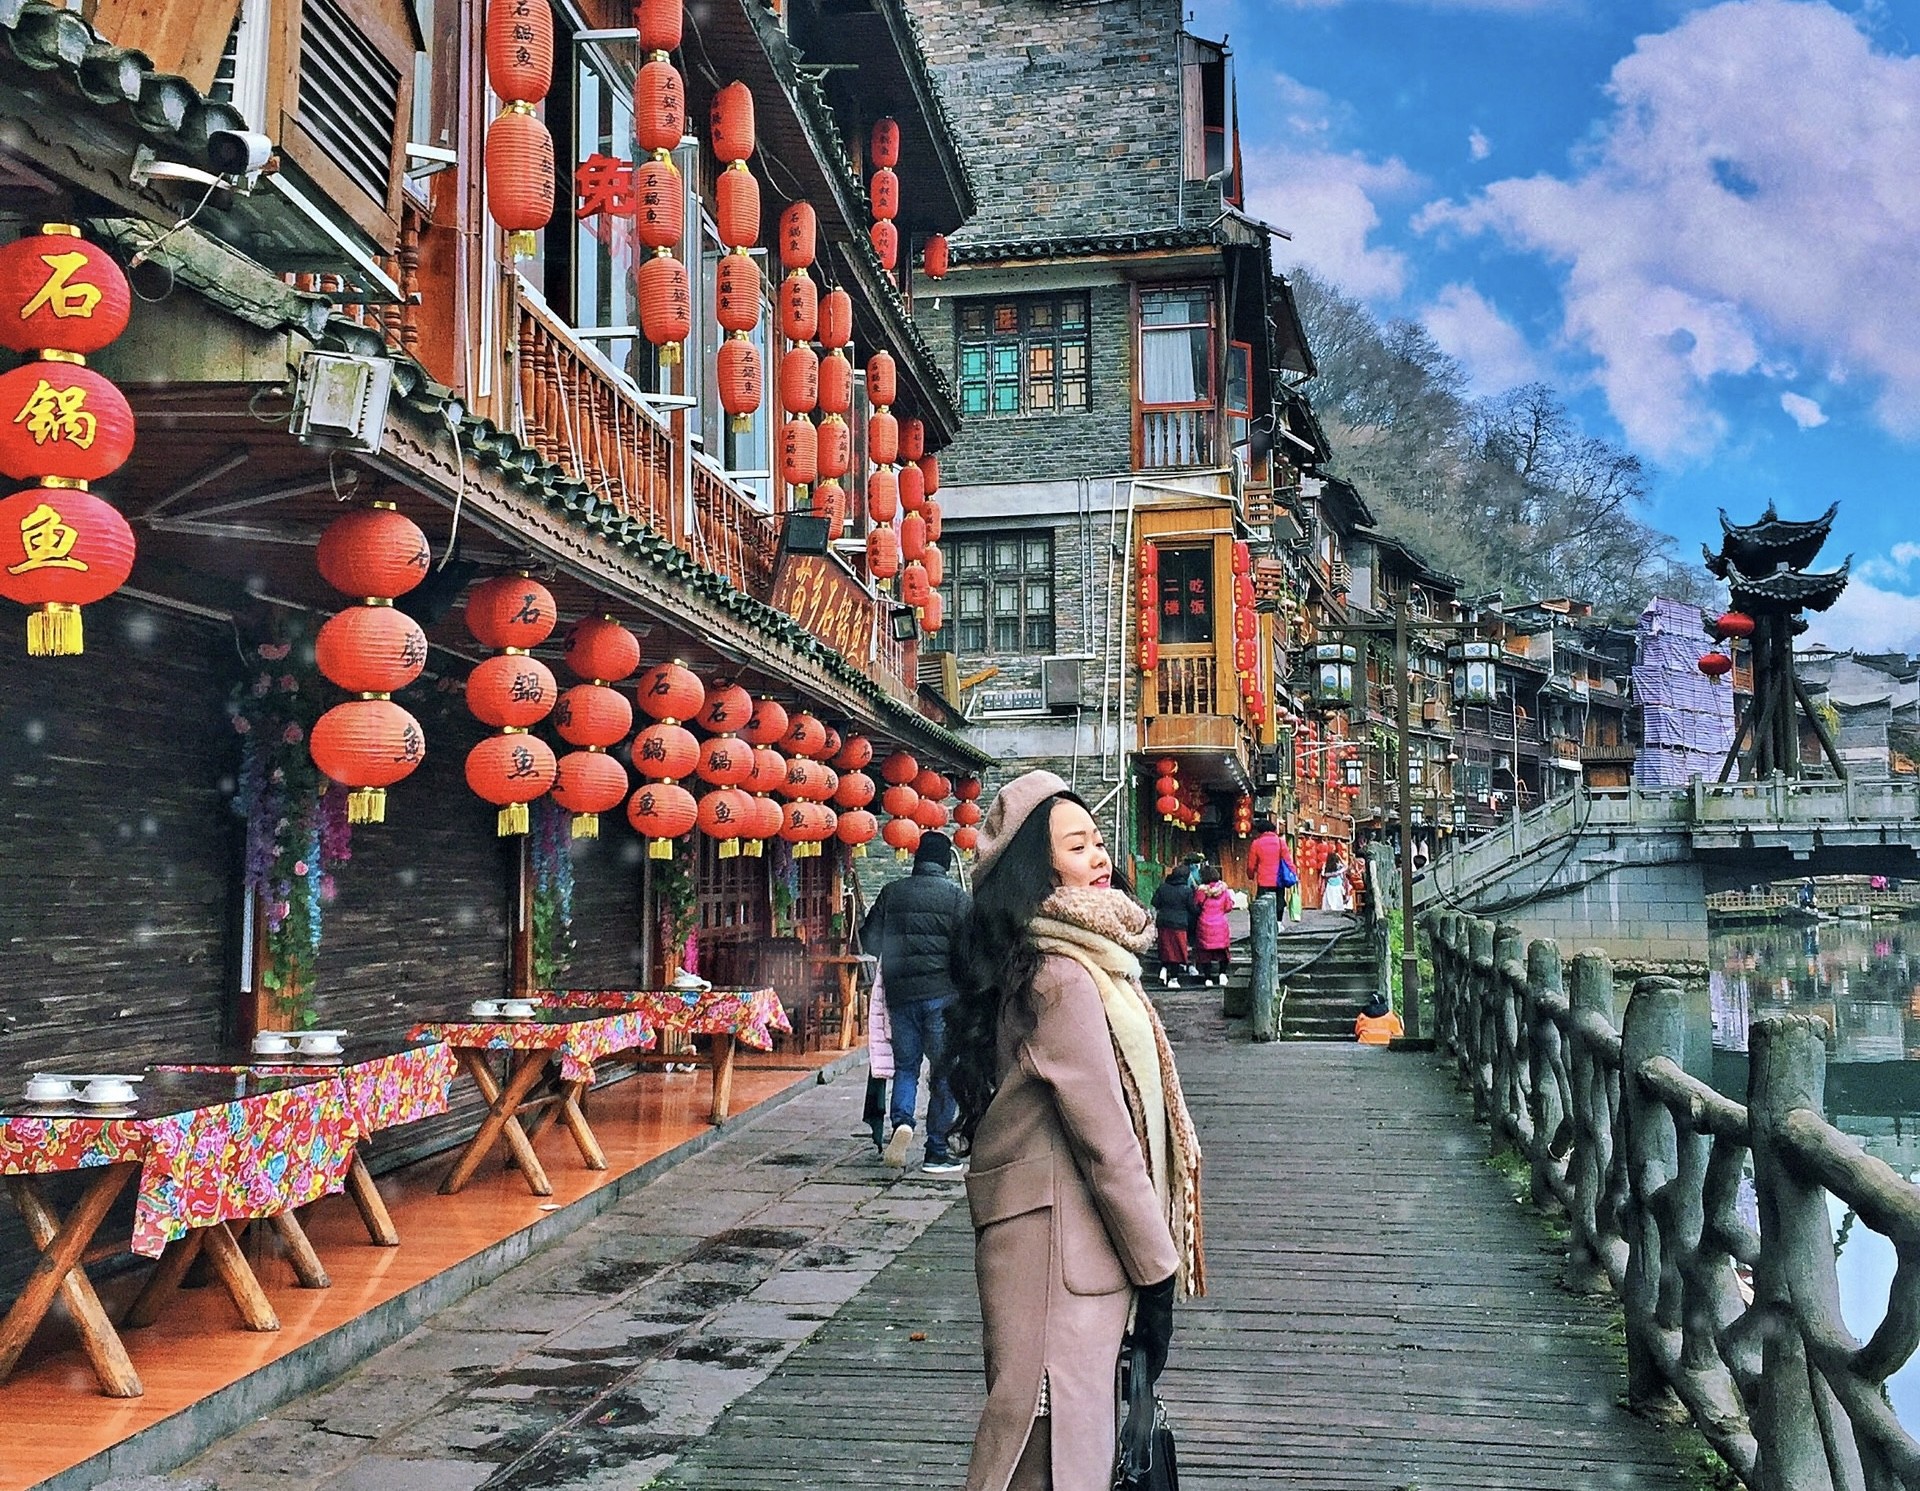 Kinh nghiệm du lịch Trung Quốc: Để có một chuyến du lịch Trung Quốc hoàn hảo, bạn cần biết những kinh nghiệm du lịch quan trọng. Hãy tìm hiểu về văn hóa địa phương, thực phẩm và những địa điểm du lịch nổi tiếng. Hành trình khám phá của bạn sẽ trở nên thú vị hơn với sự chuẩn bị chu đáo.